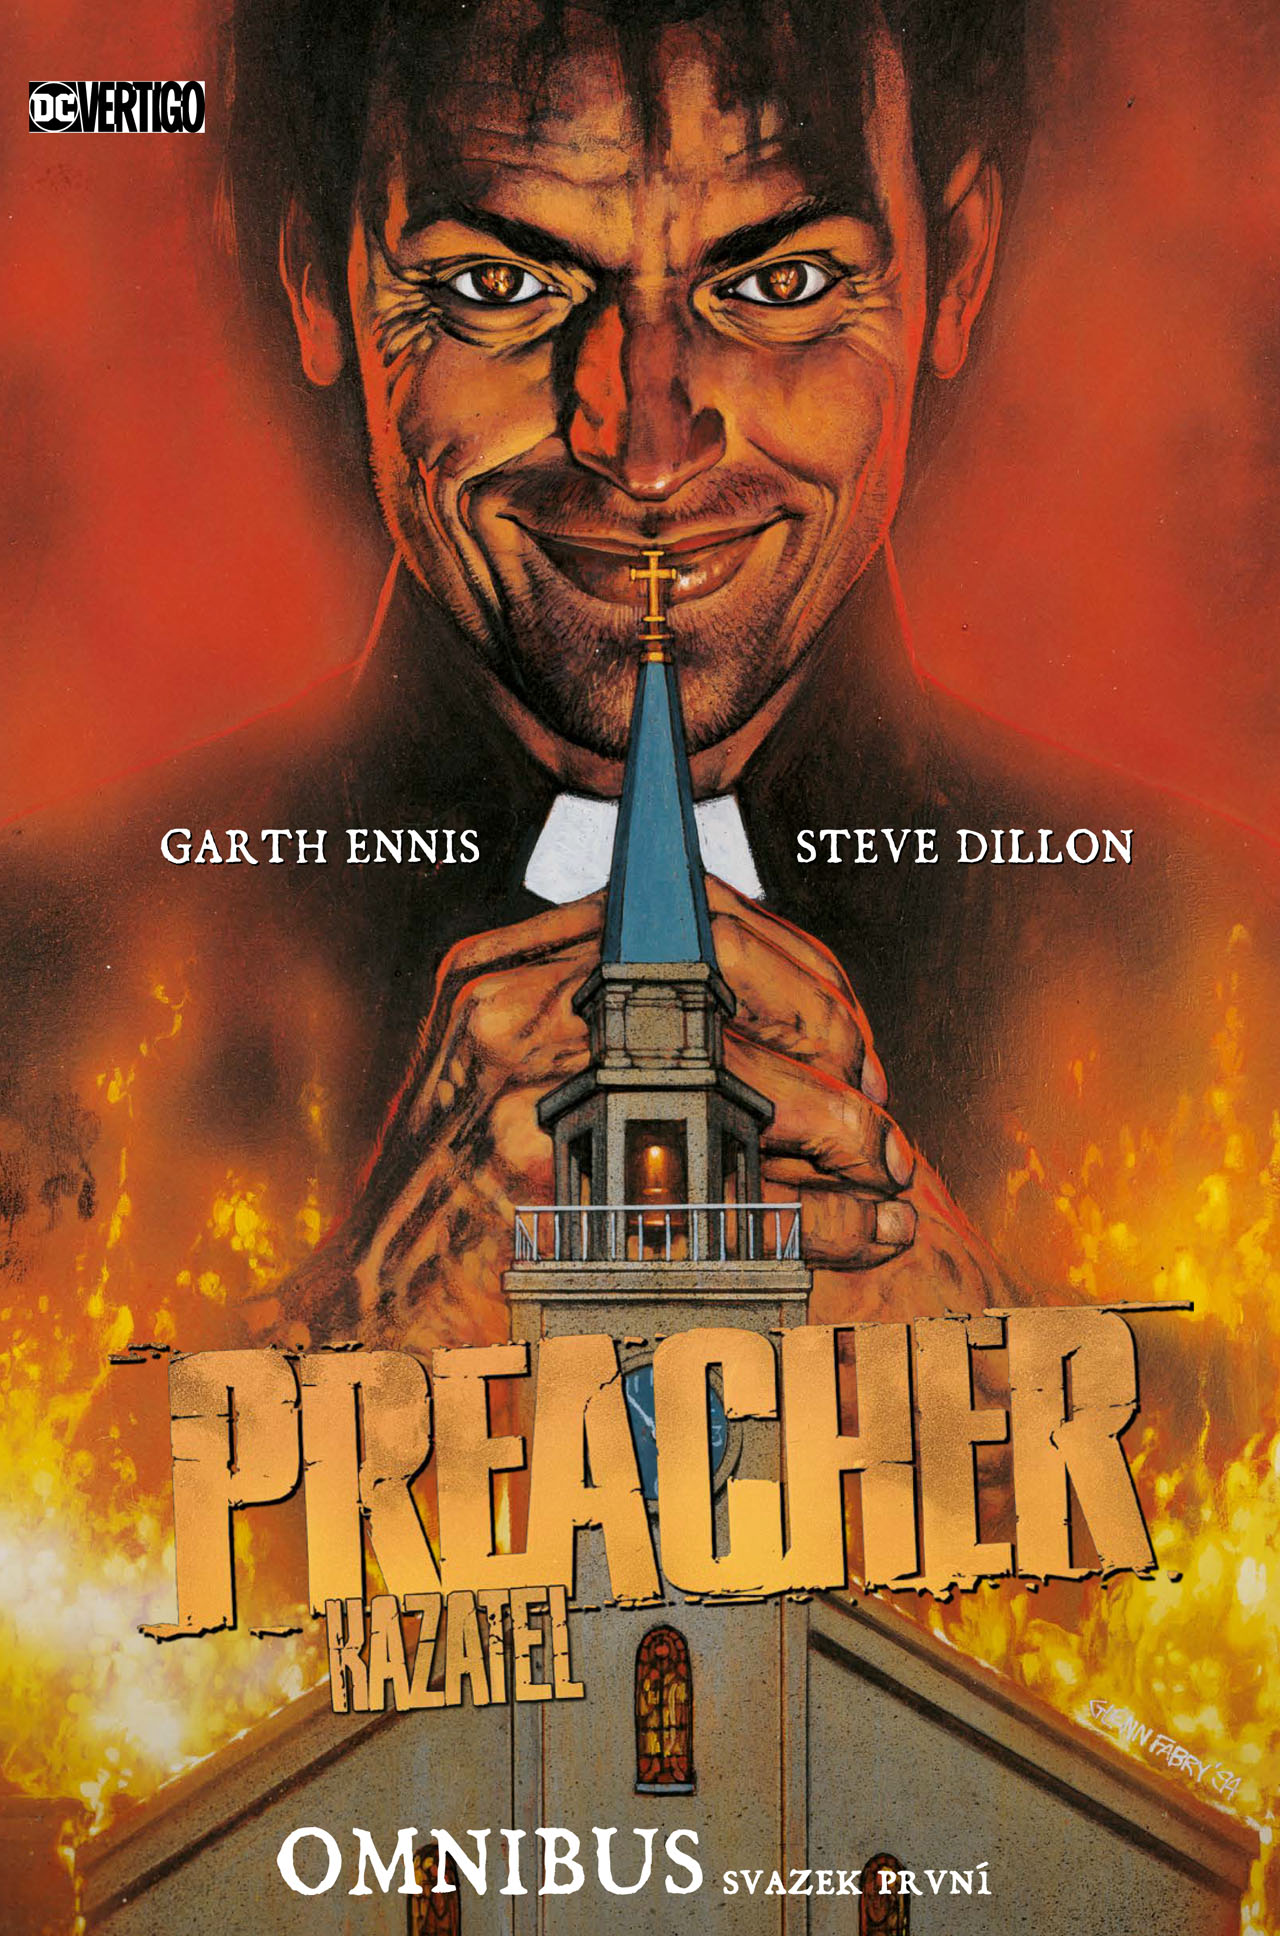 obrázek k novince - Preacher/Kazatel omnibus, svazek první (základní verze)